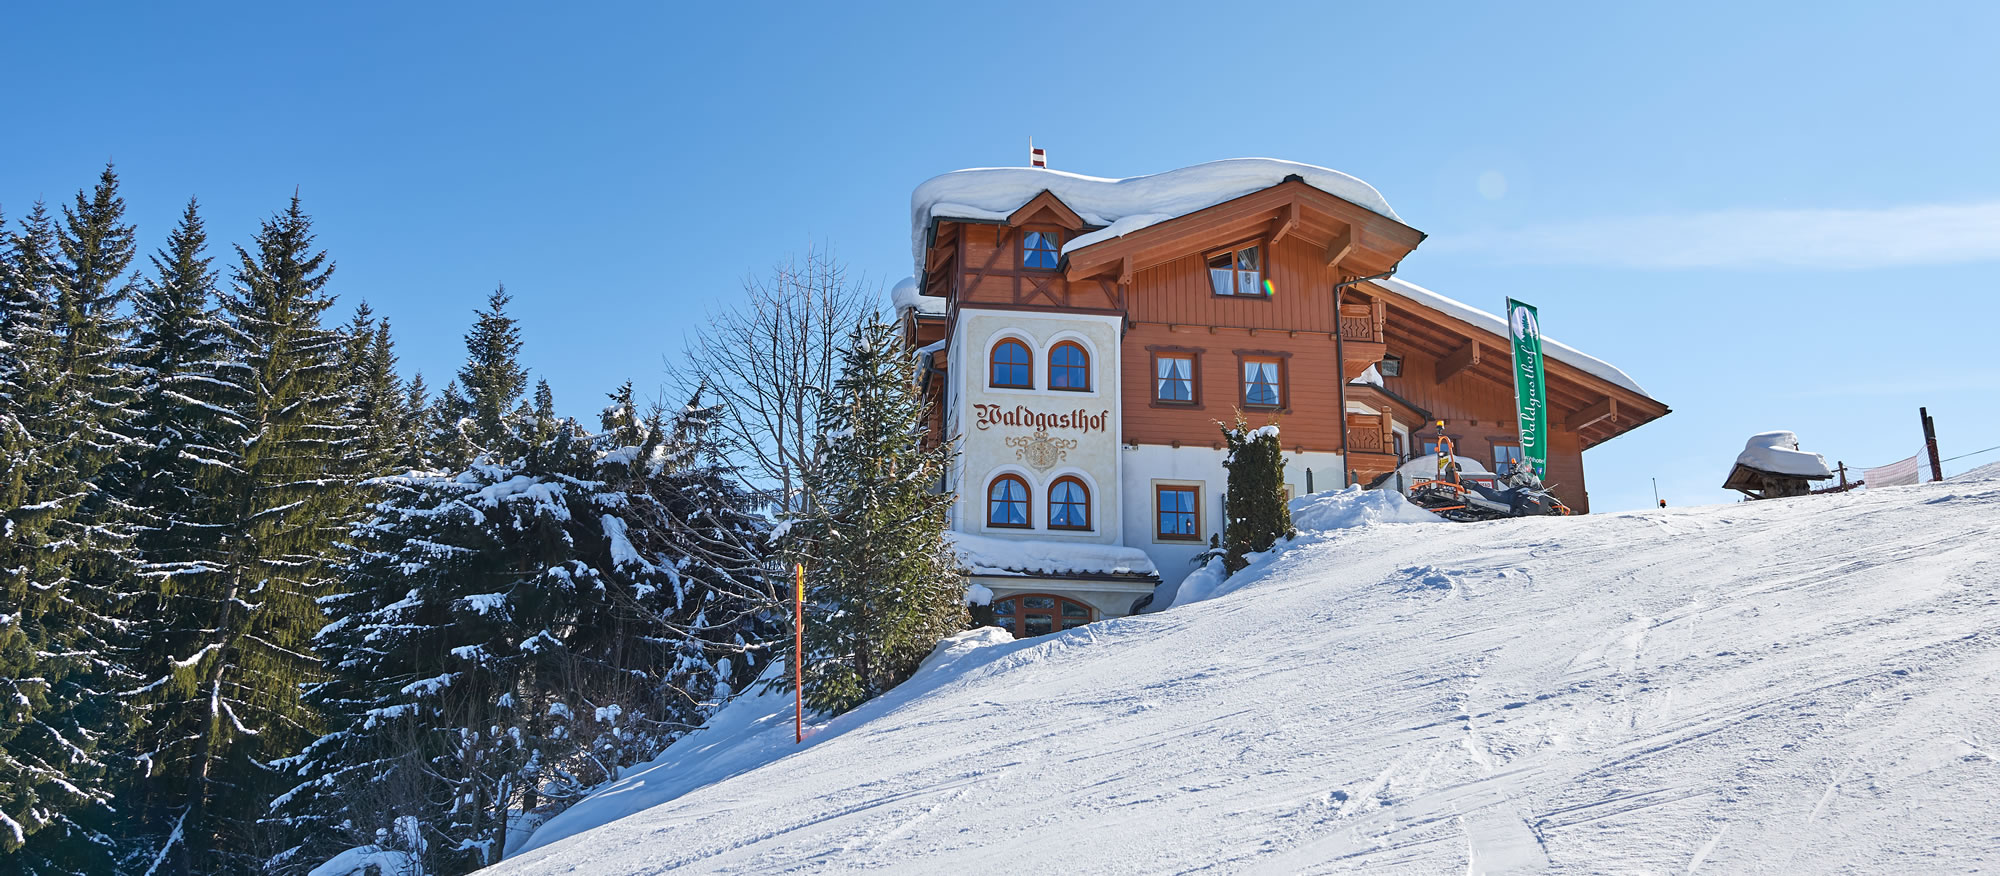 Hotel Waldgasthof im Winter - direkt an der Skipiste